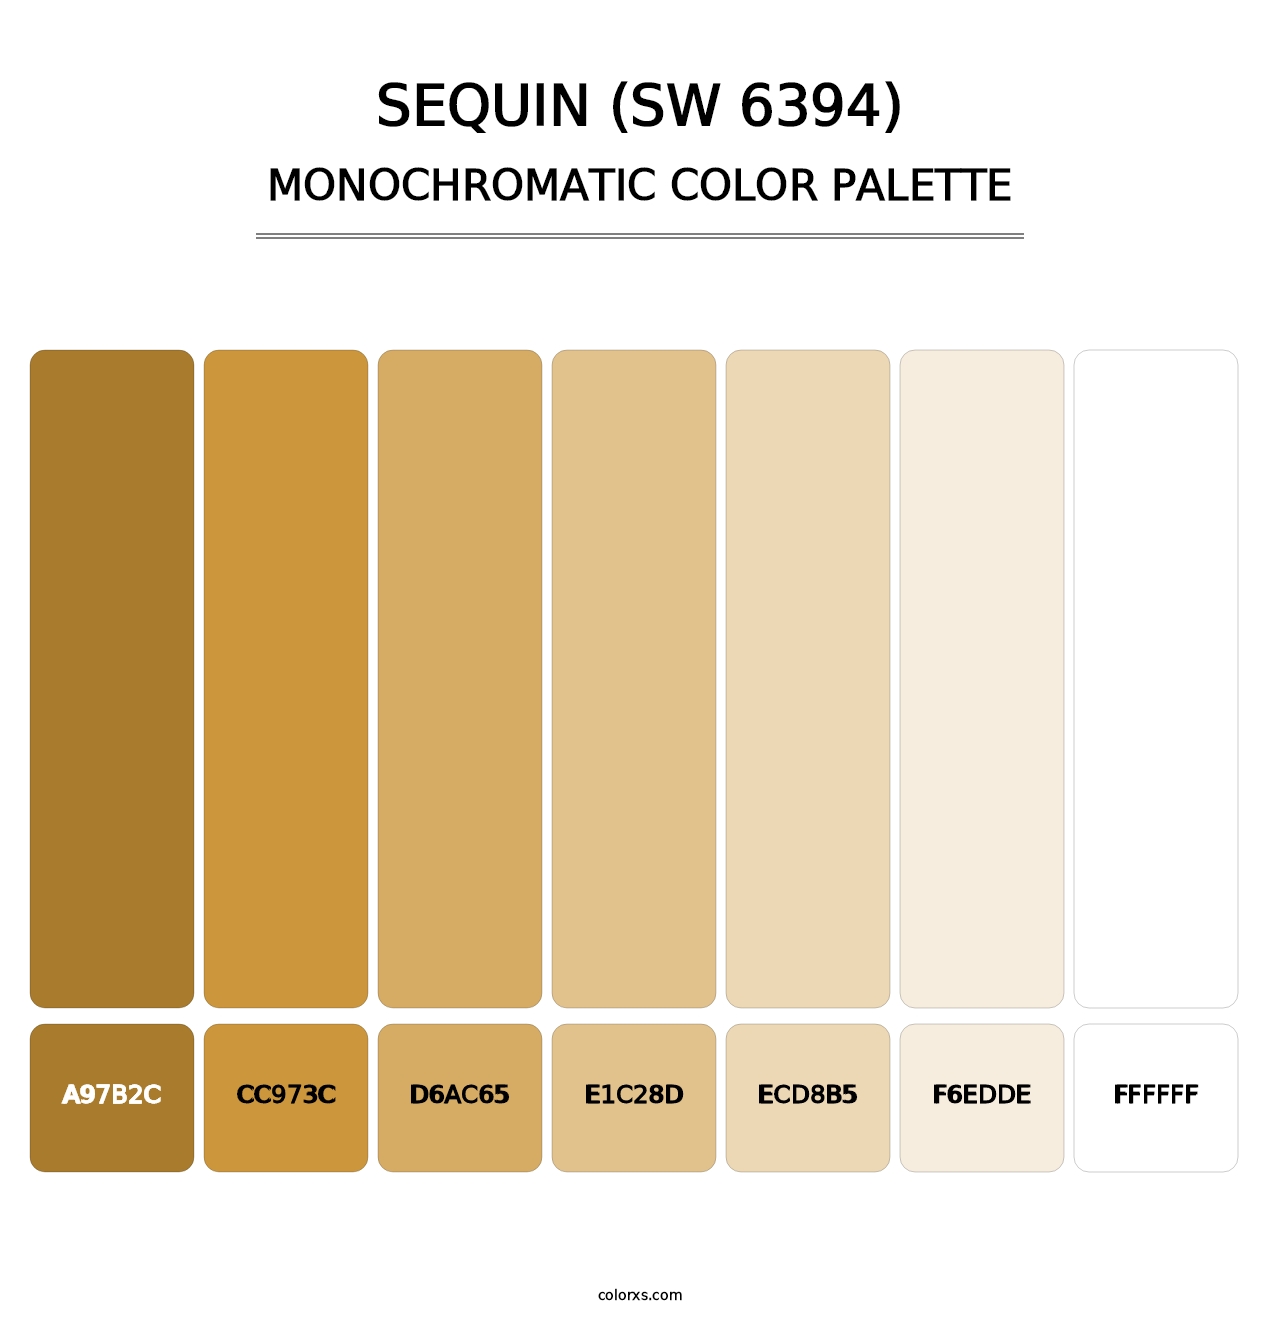 Sequin (SW 6394) - Monochromatic Color Palette